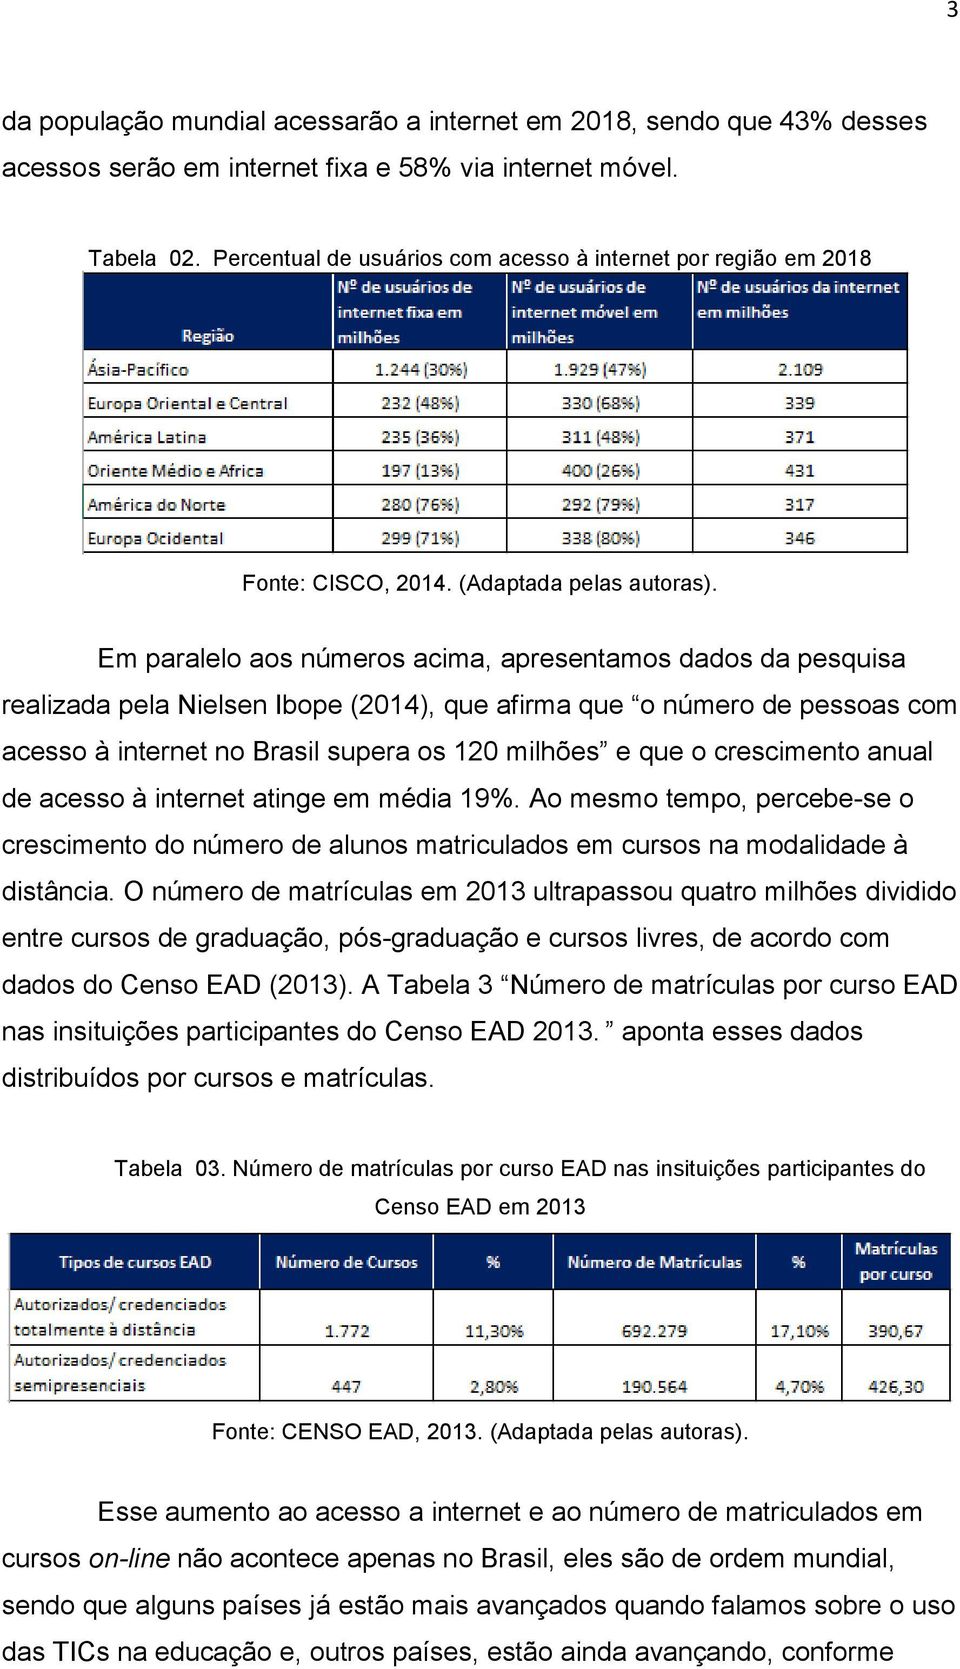 Em paralelo aos números acima, apresentamos dados da pesquisa realizada pela Nielsen Ibope (2014), que afirma que o número de pessoas com acesso à internet no Brasil supera os 120 milhões e que o